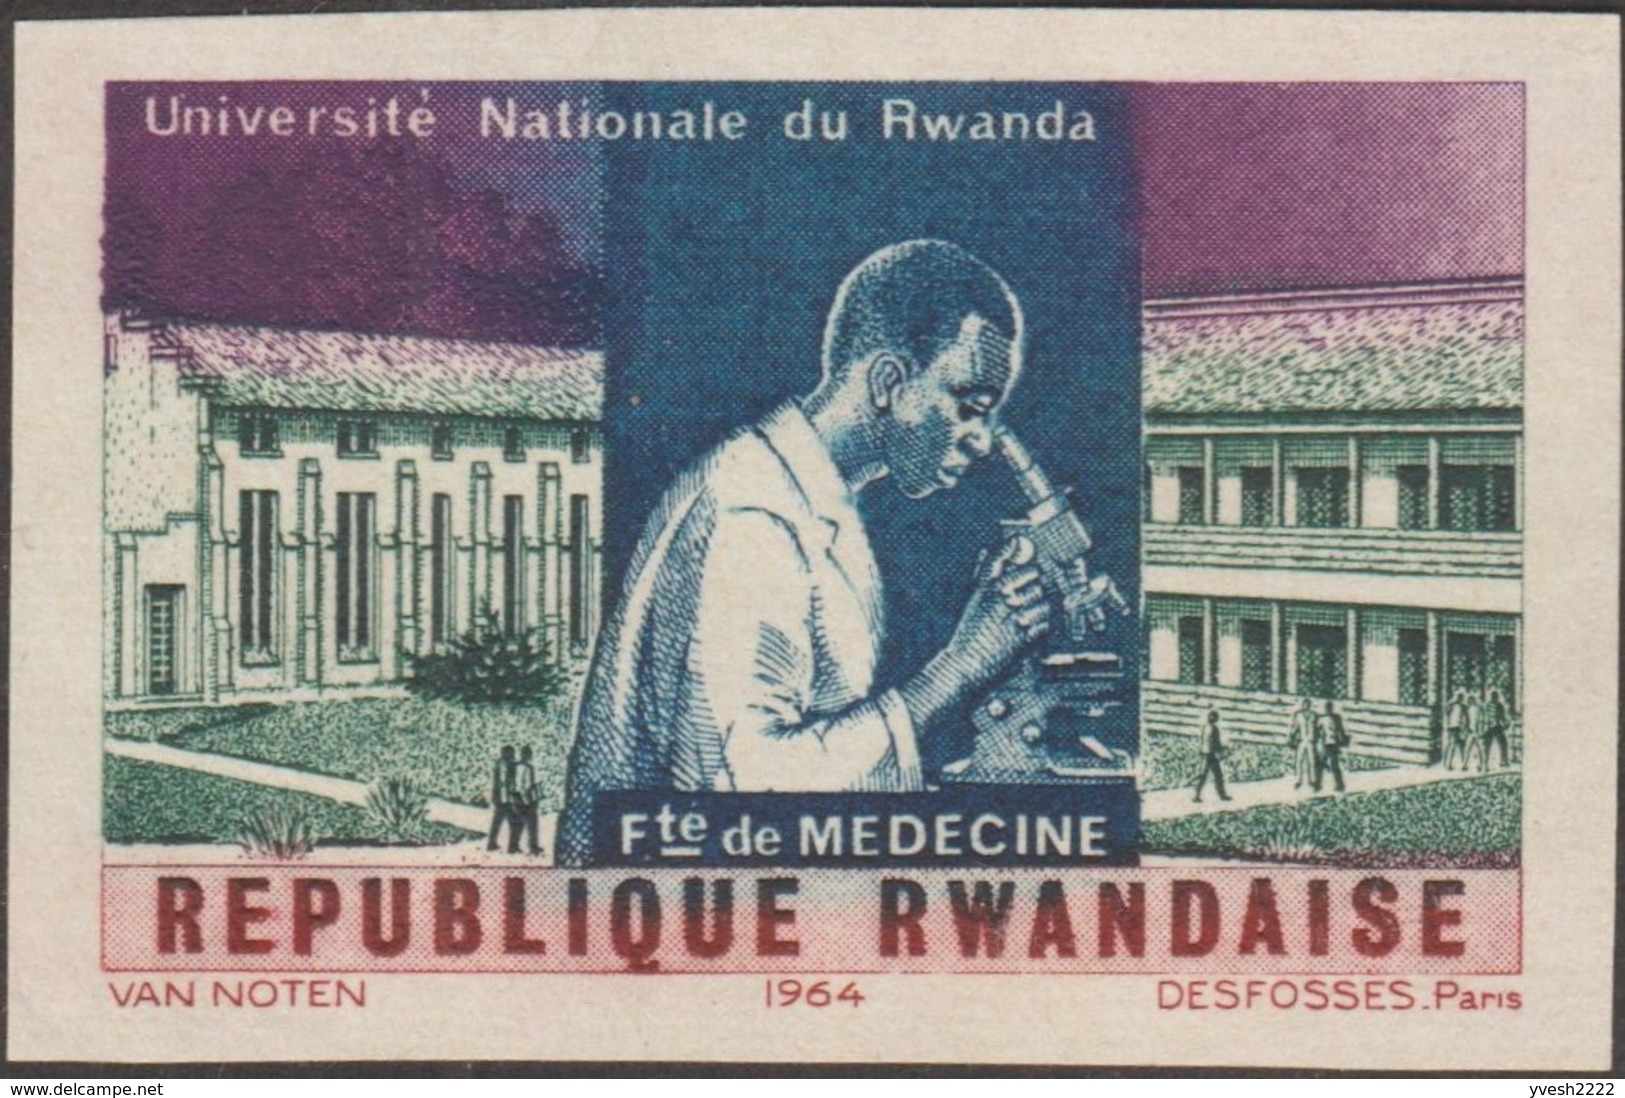 Rwanda 1965 COB 84/91. 25 essais de couleurs. Université du Rwanda, mathématiques racine, médecine, chimie, droit